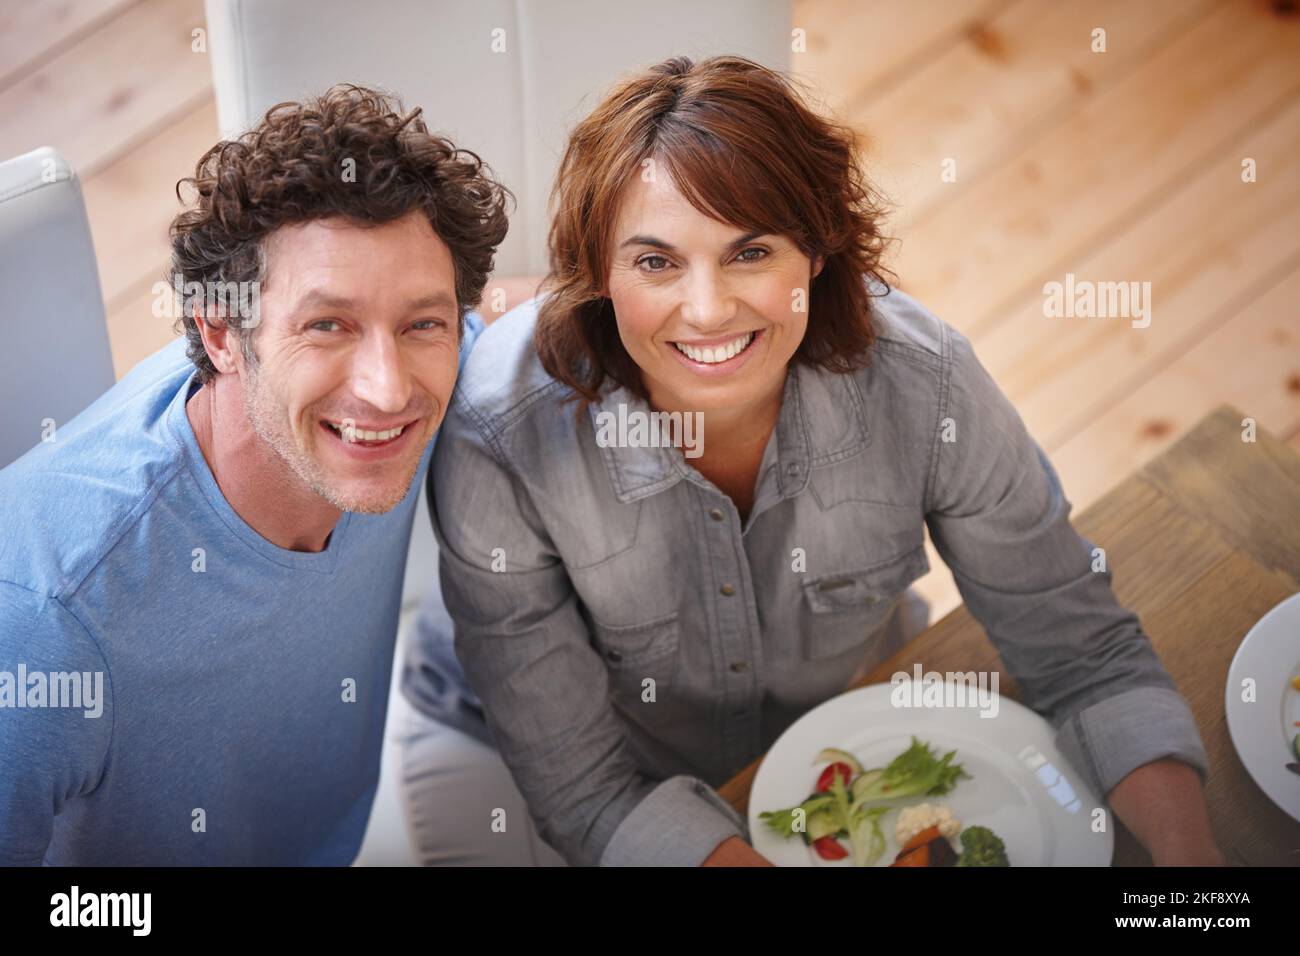 Fait avec amour. Portrait d'un couple souriant prenant un repas ensemble. Banque D'Images